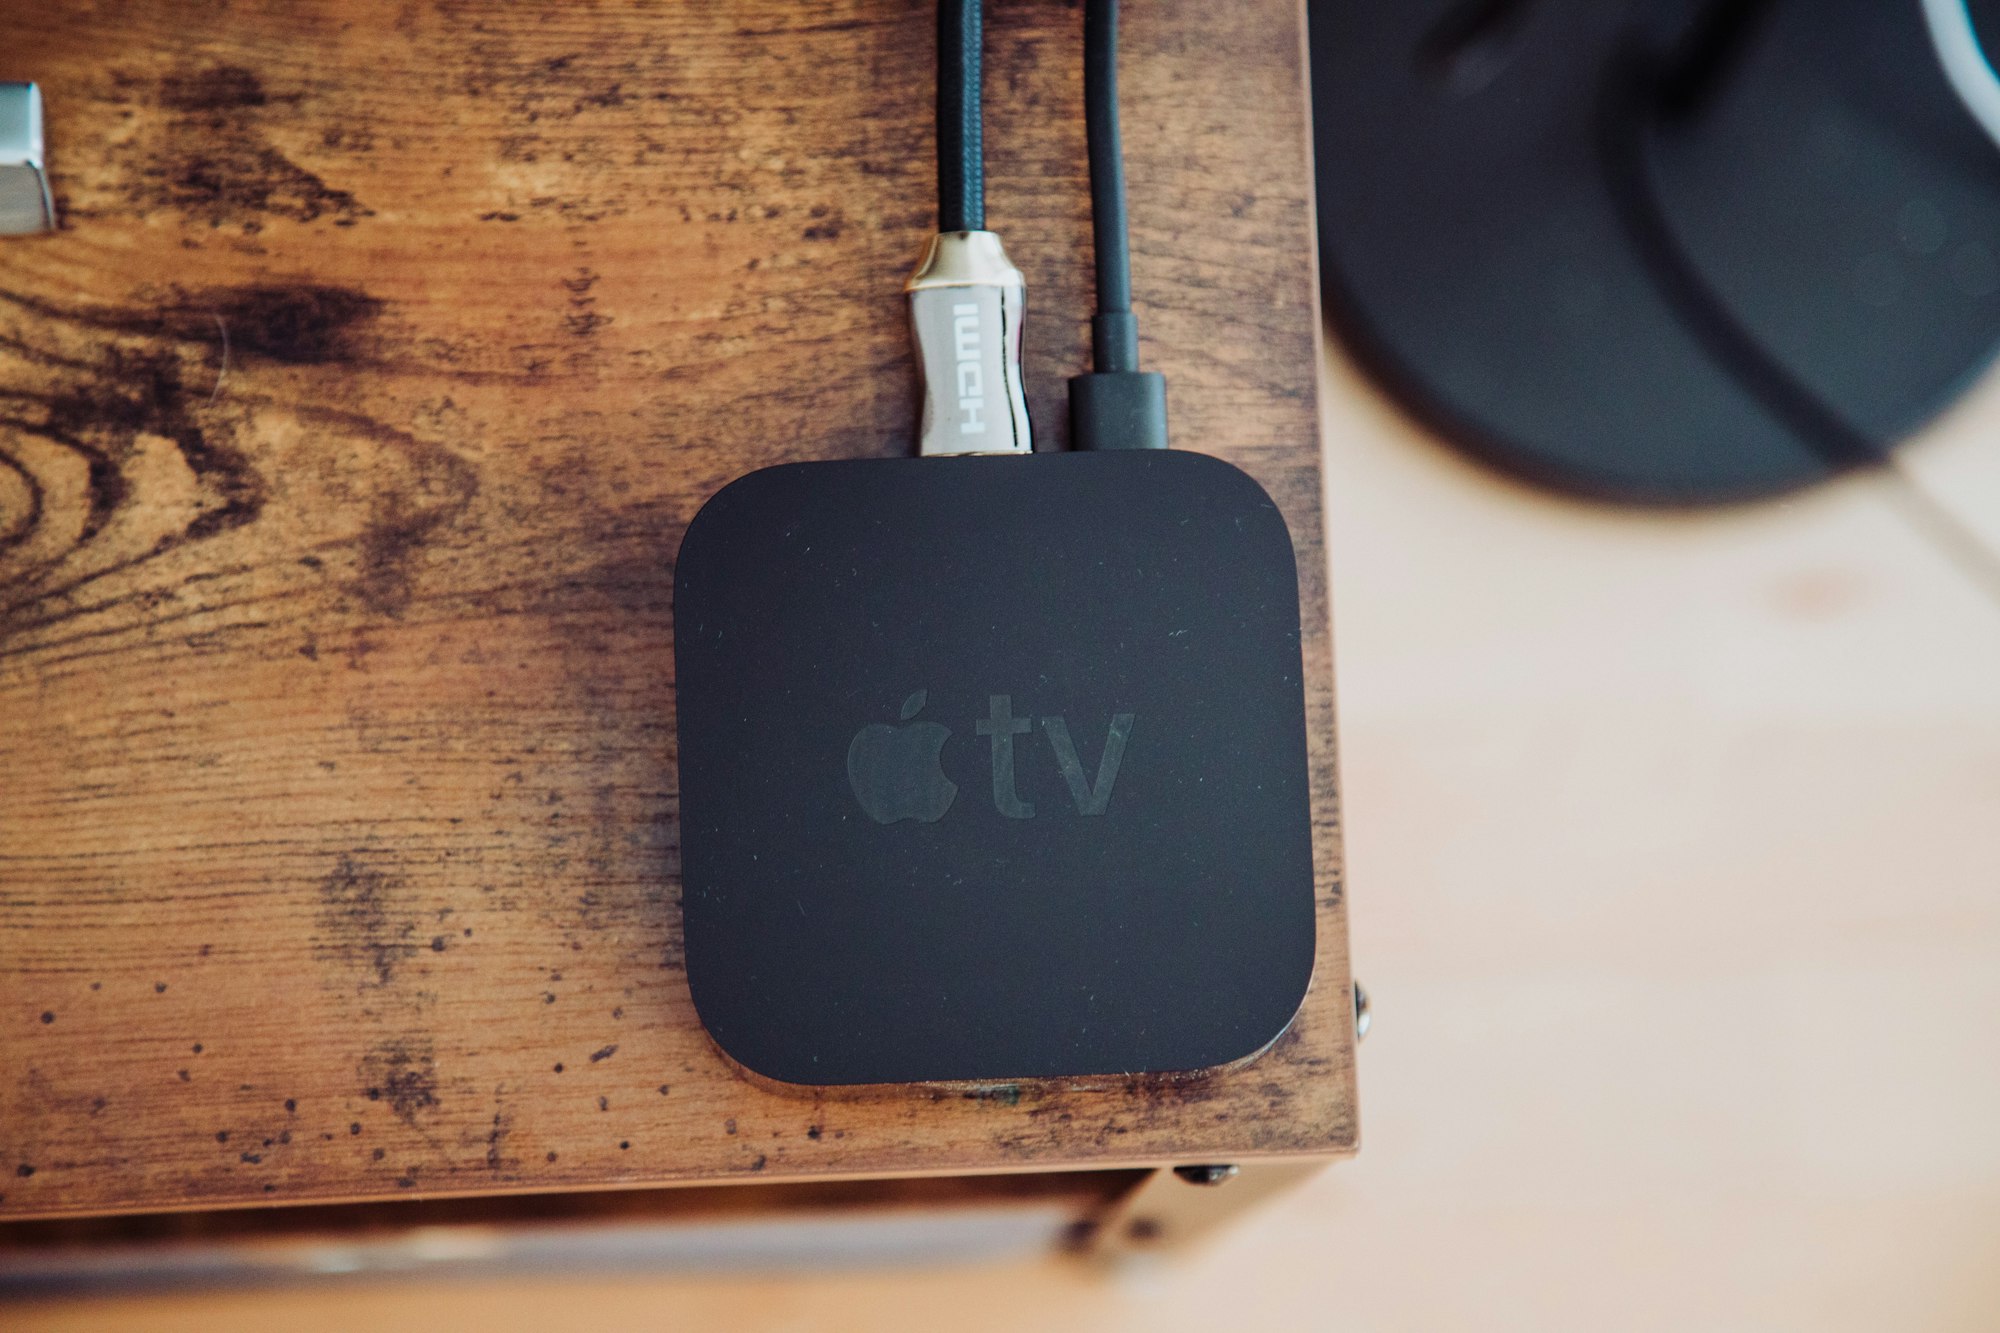 IPVanish for Apple TV: VPN Alternatives For Blocked Apps and TV Shows